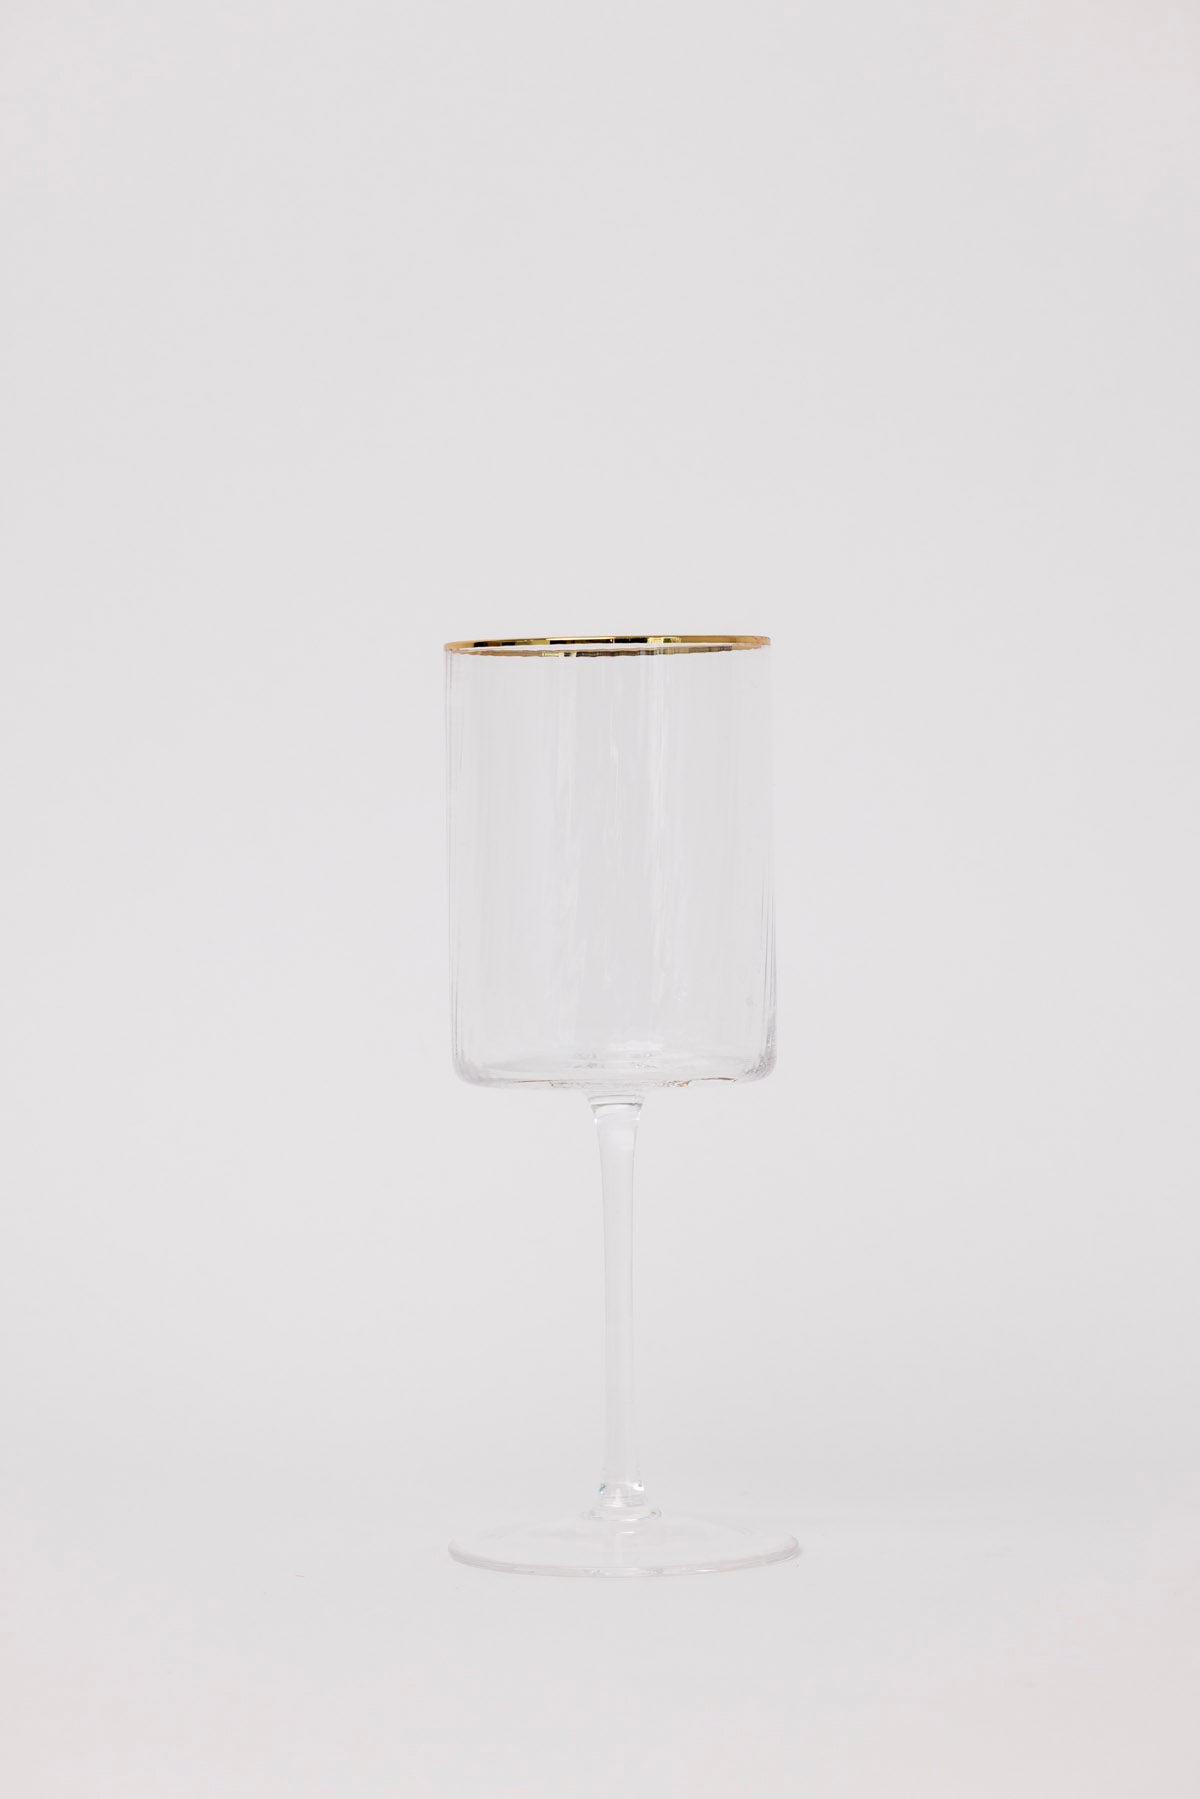 Gisele Wine Glass w/ Gold Rim